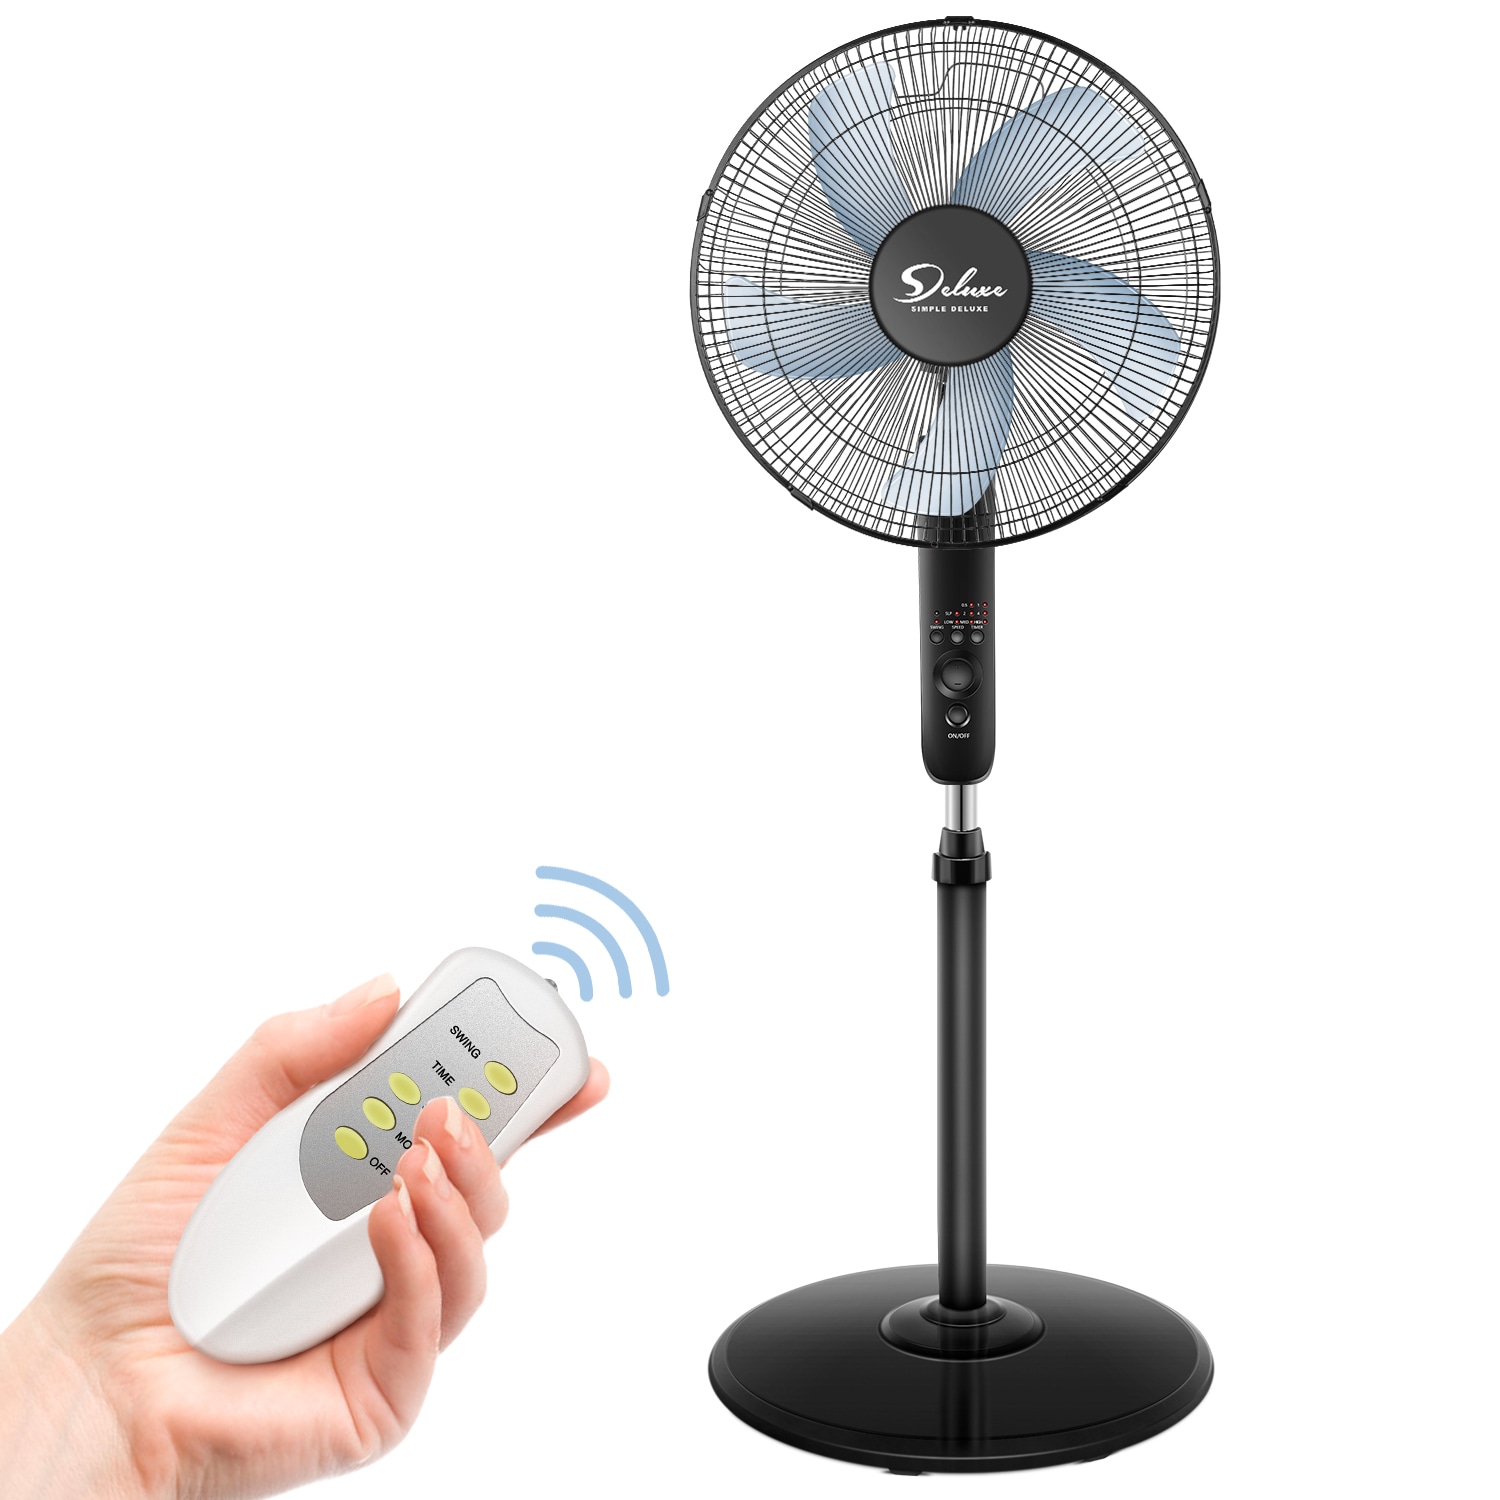 16" Pedestal Standing Fan Cooling 3 Speeds Oscillating Timer Remote Adjustable 